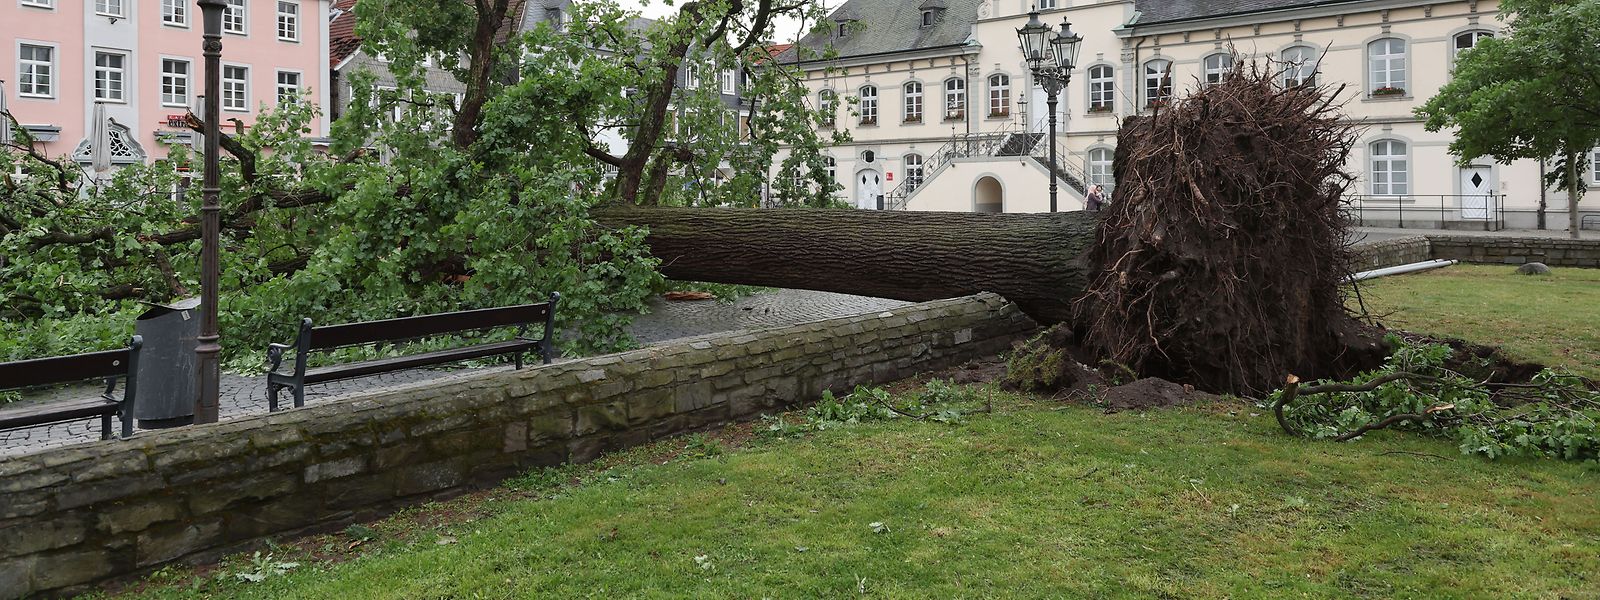 Schäden nach einem Tornado in Lippstadt in Nordrhein-Westfalen.  